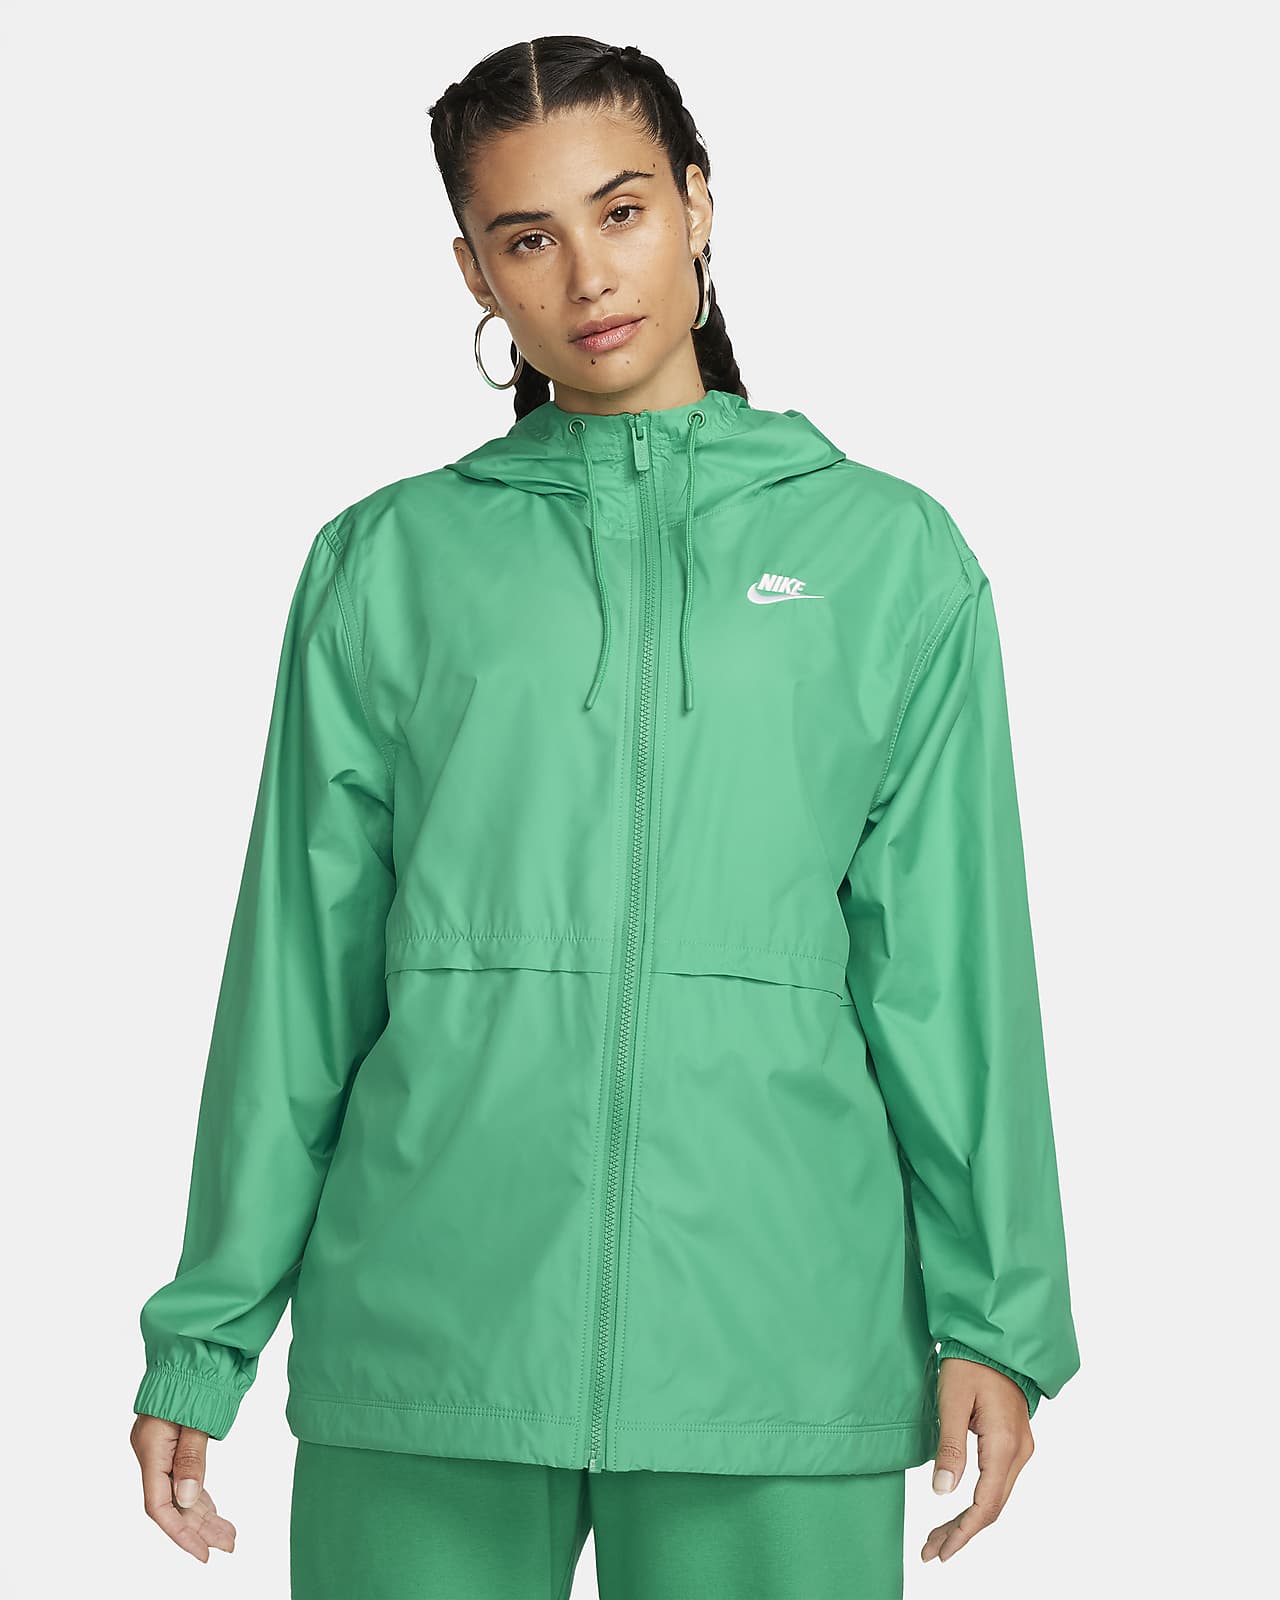 Nike Sportswear Essential Repel Women's Woven Jacket.